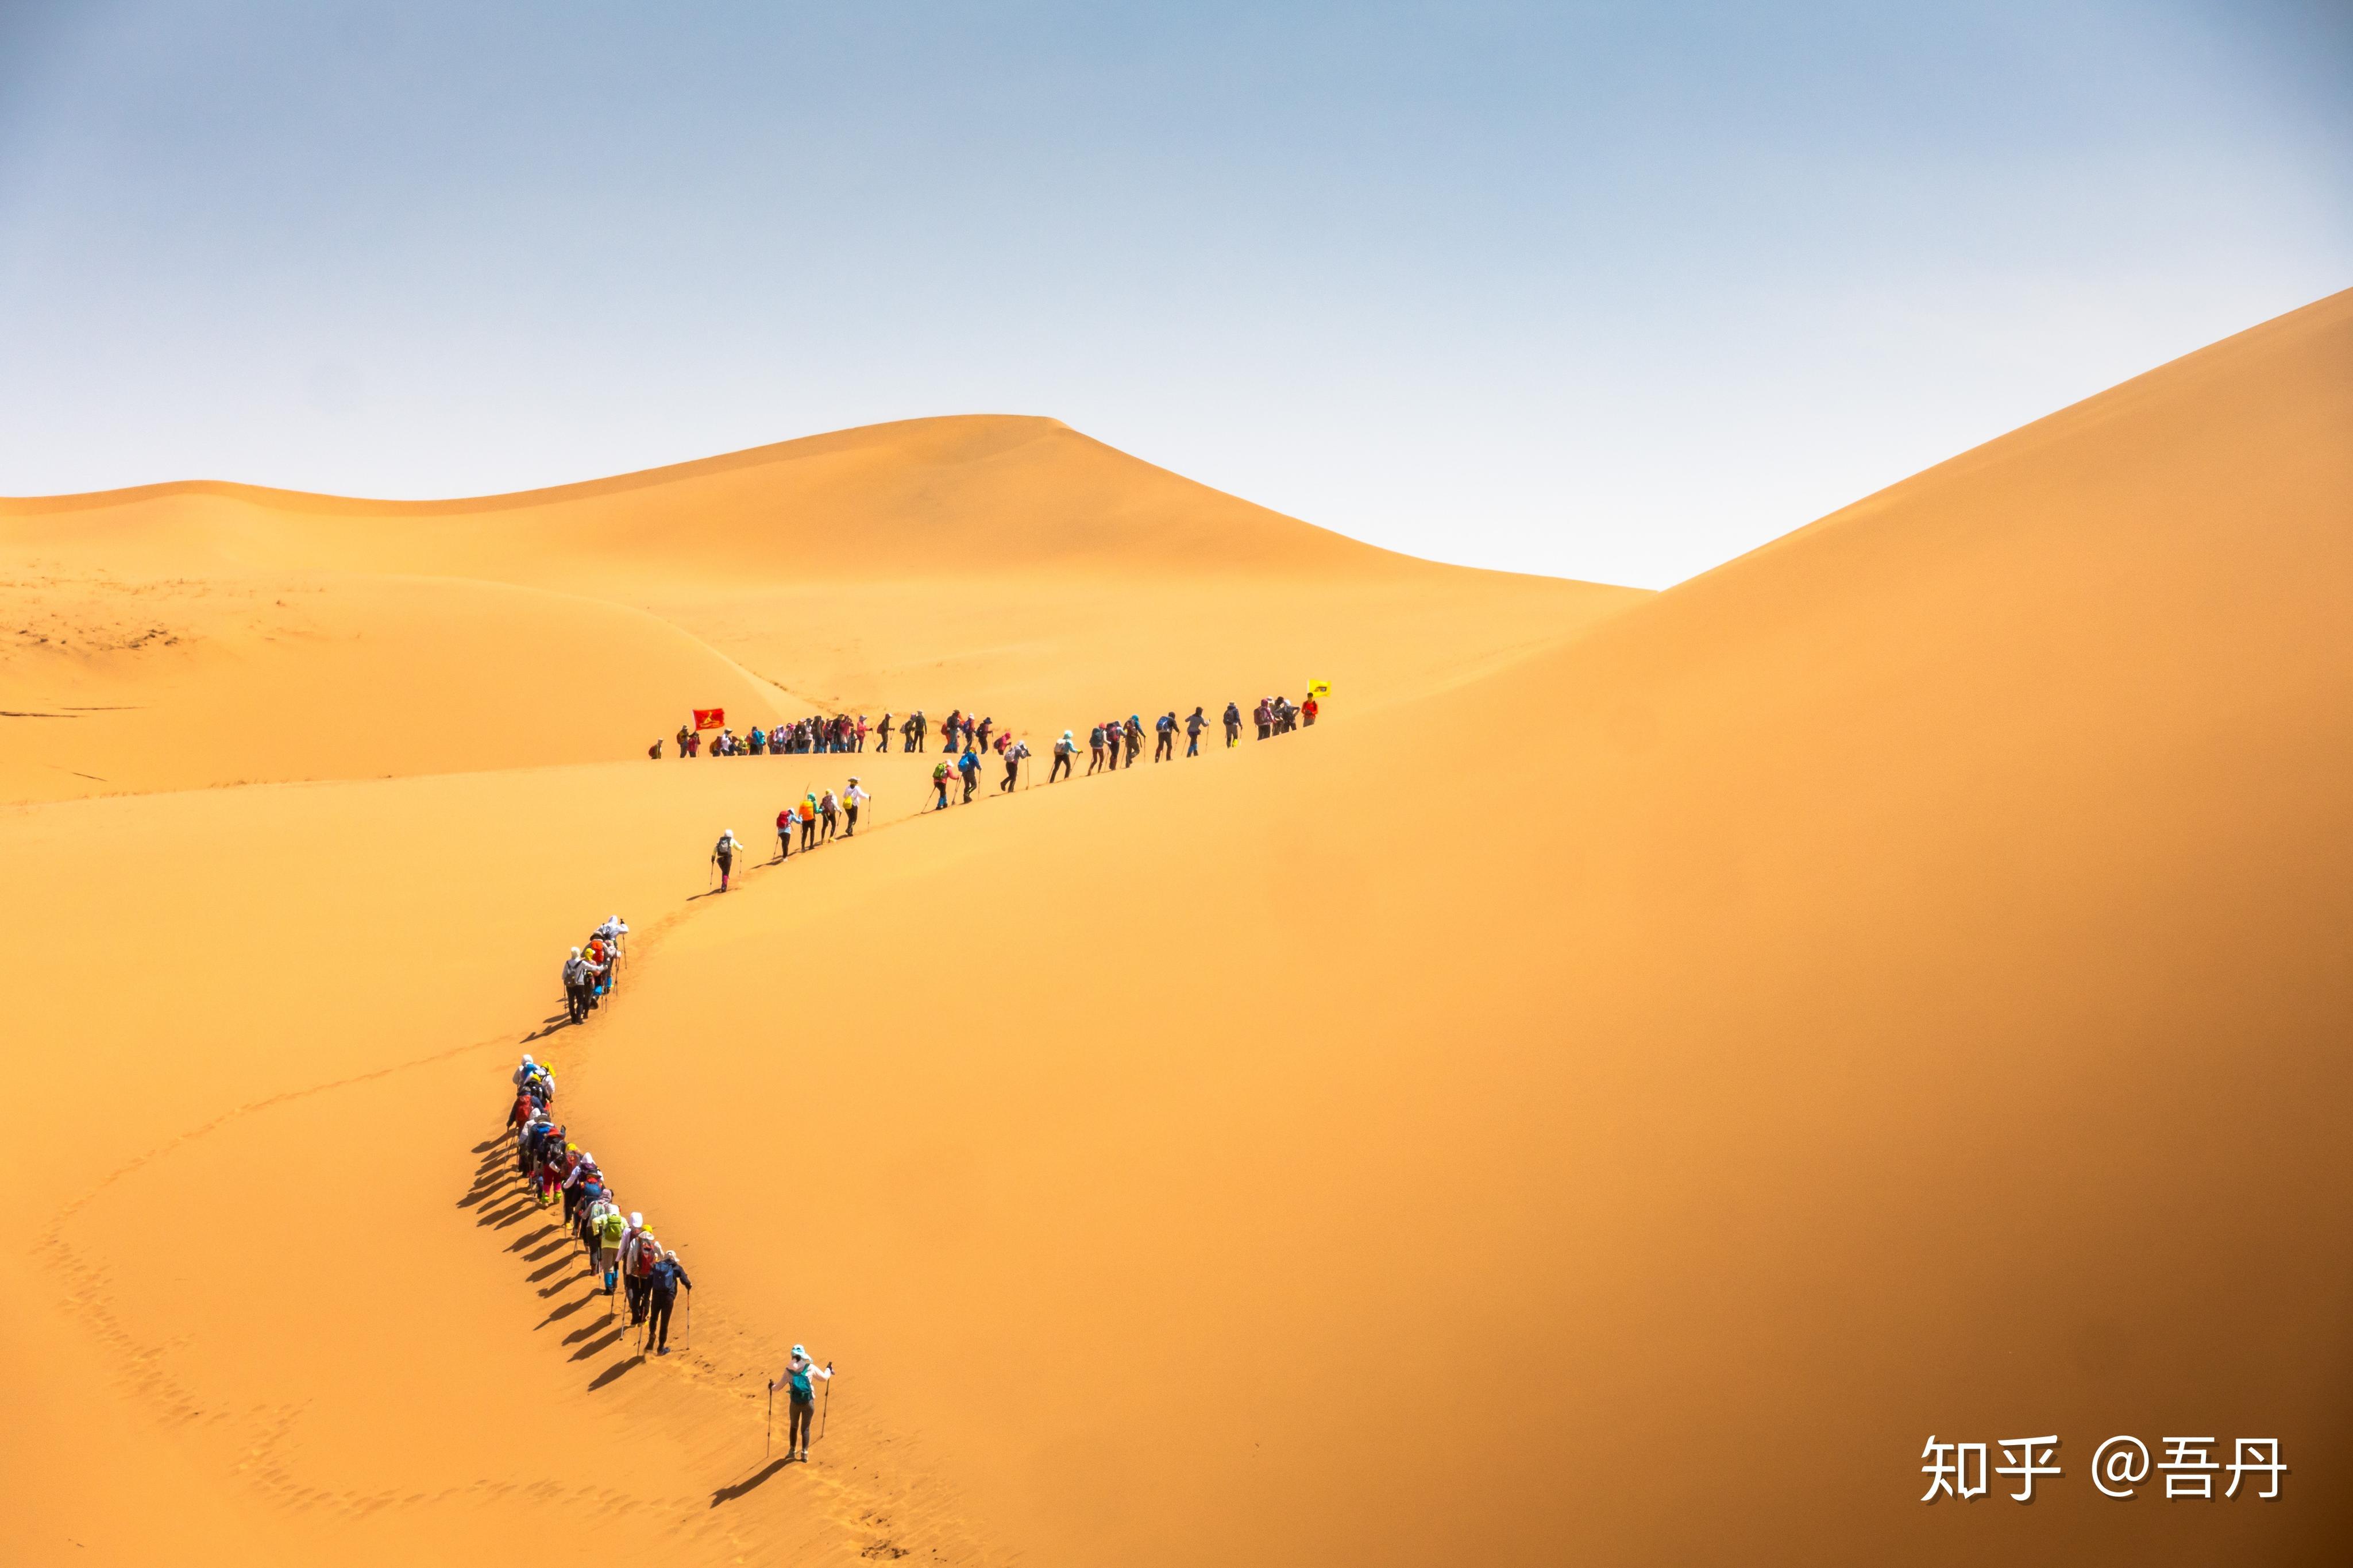 新疆沙漠公园 - 绝美图库 - 华声论坛